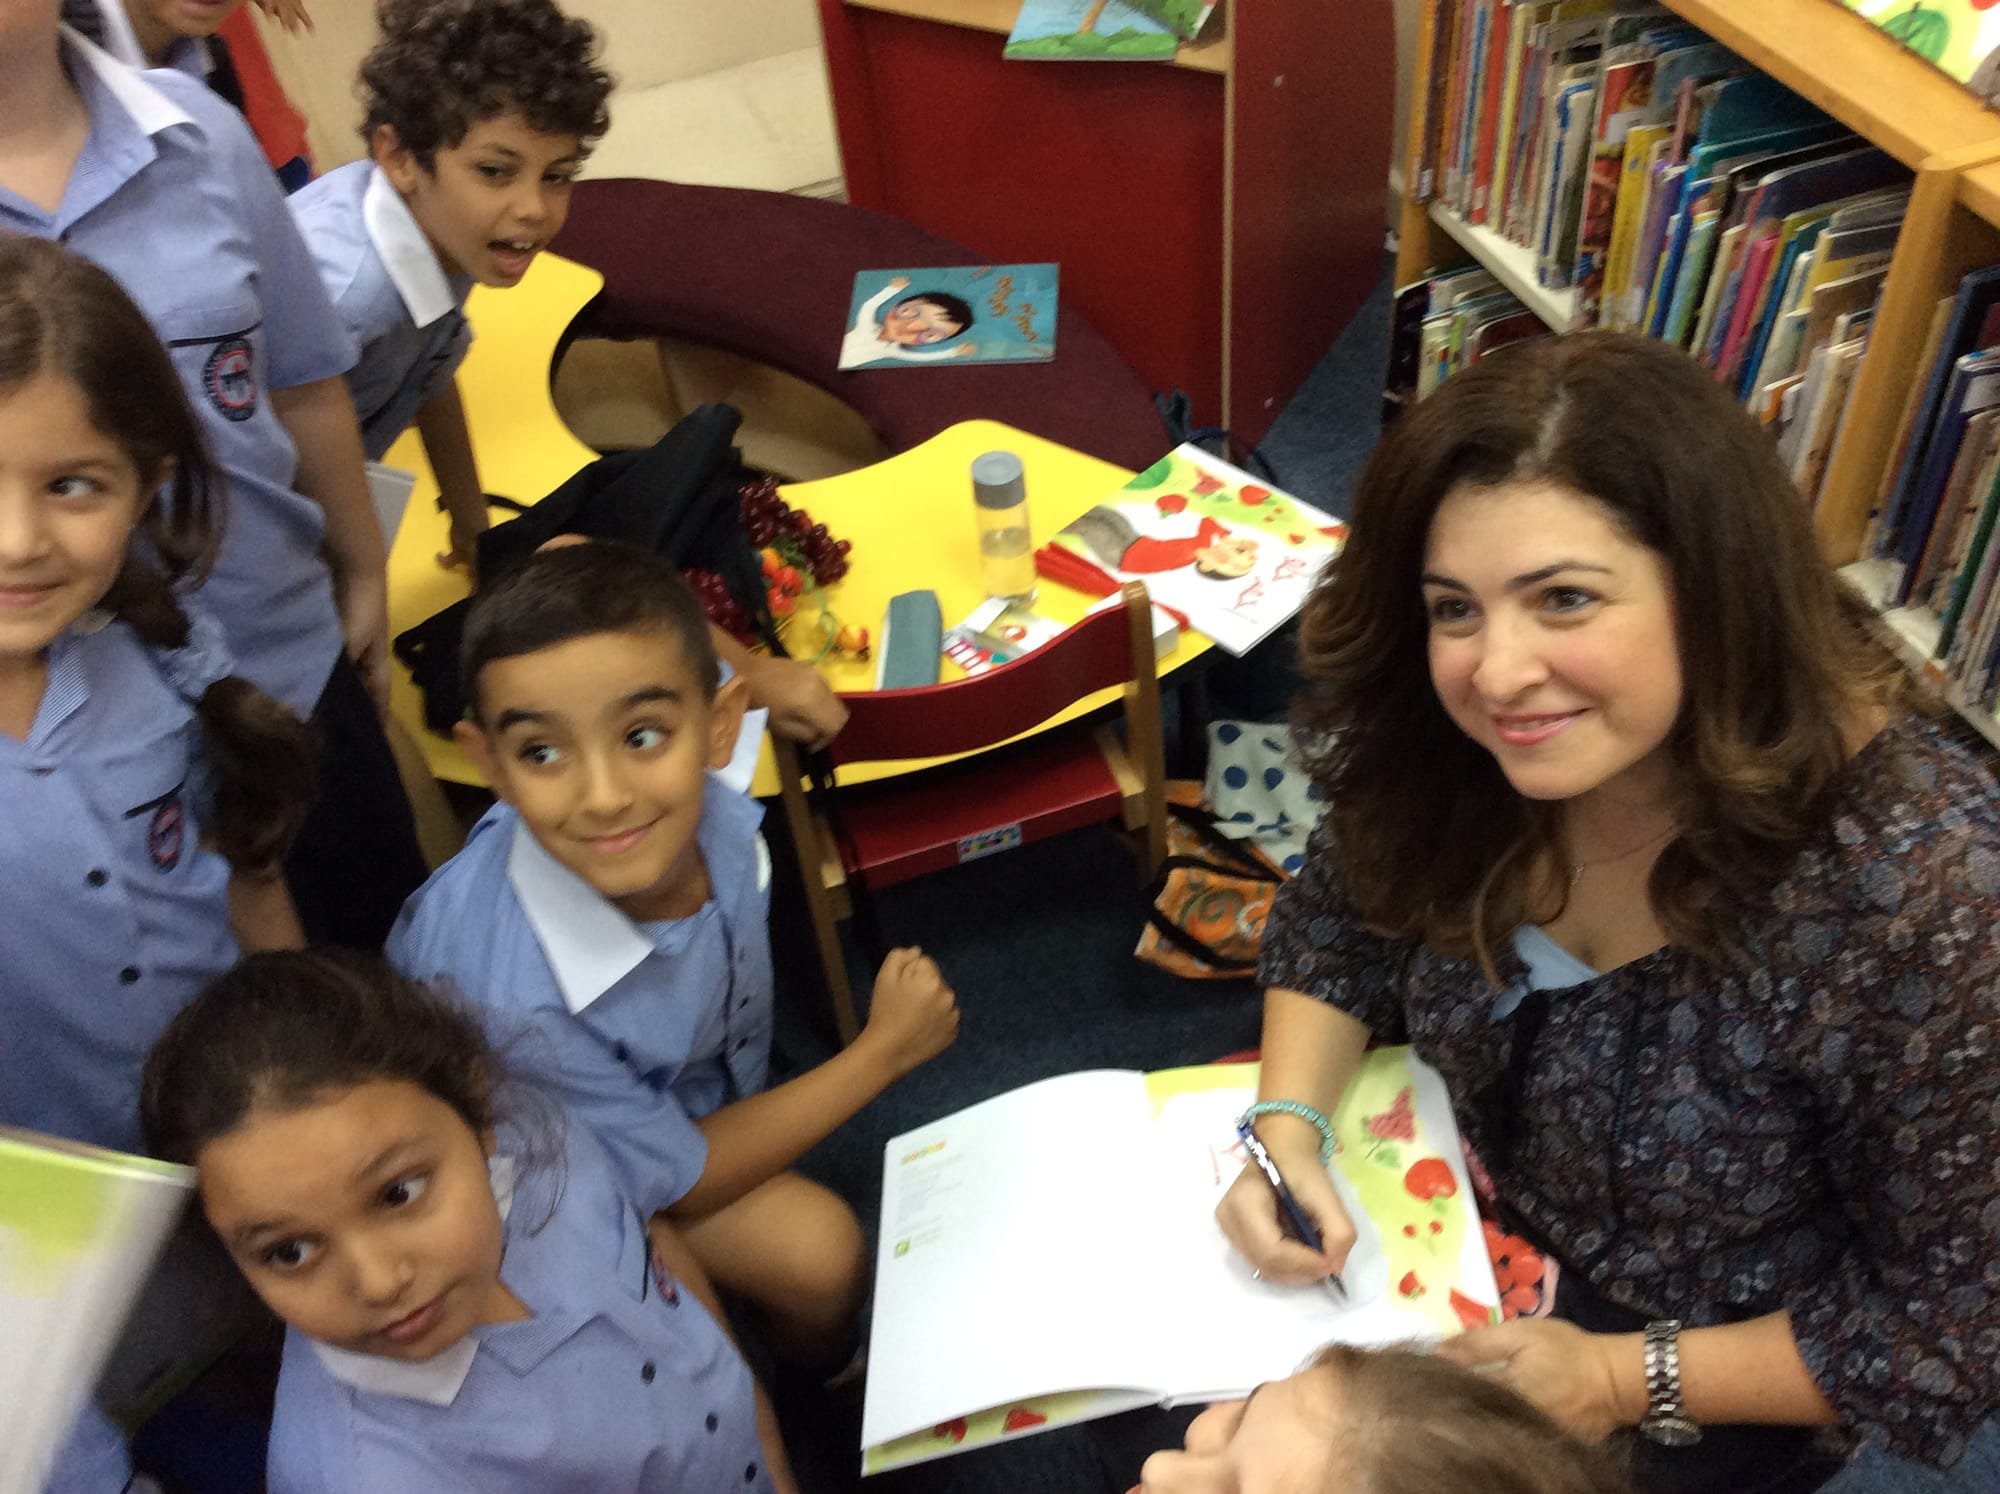 الكاتبة اللبنانية سحر نجا محفوظ:  " أدب الطفل العربي بالمسار الصحيح وقد بدأ يشق طريقه نحو العالمية "